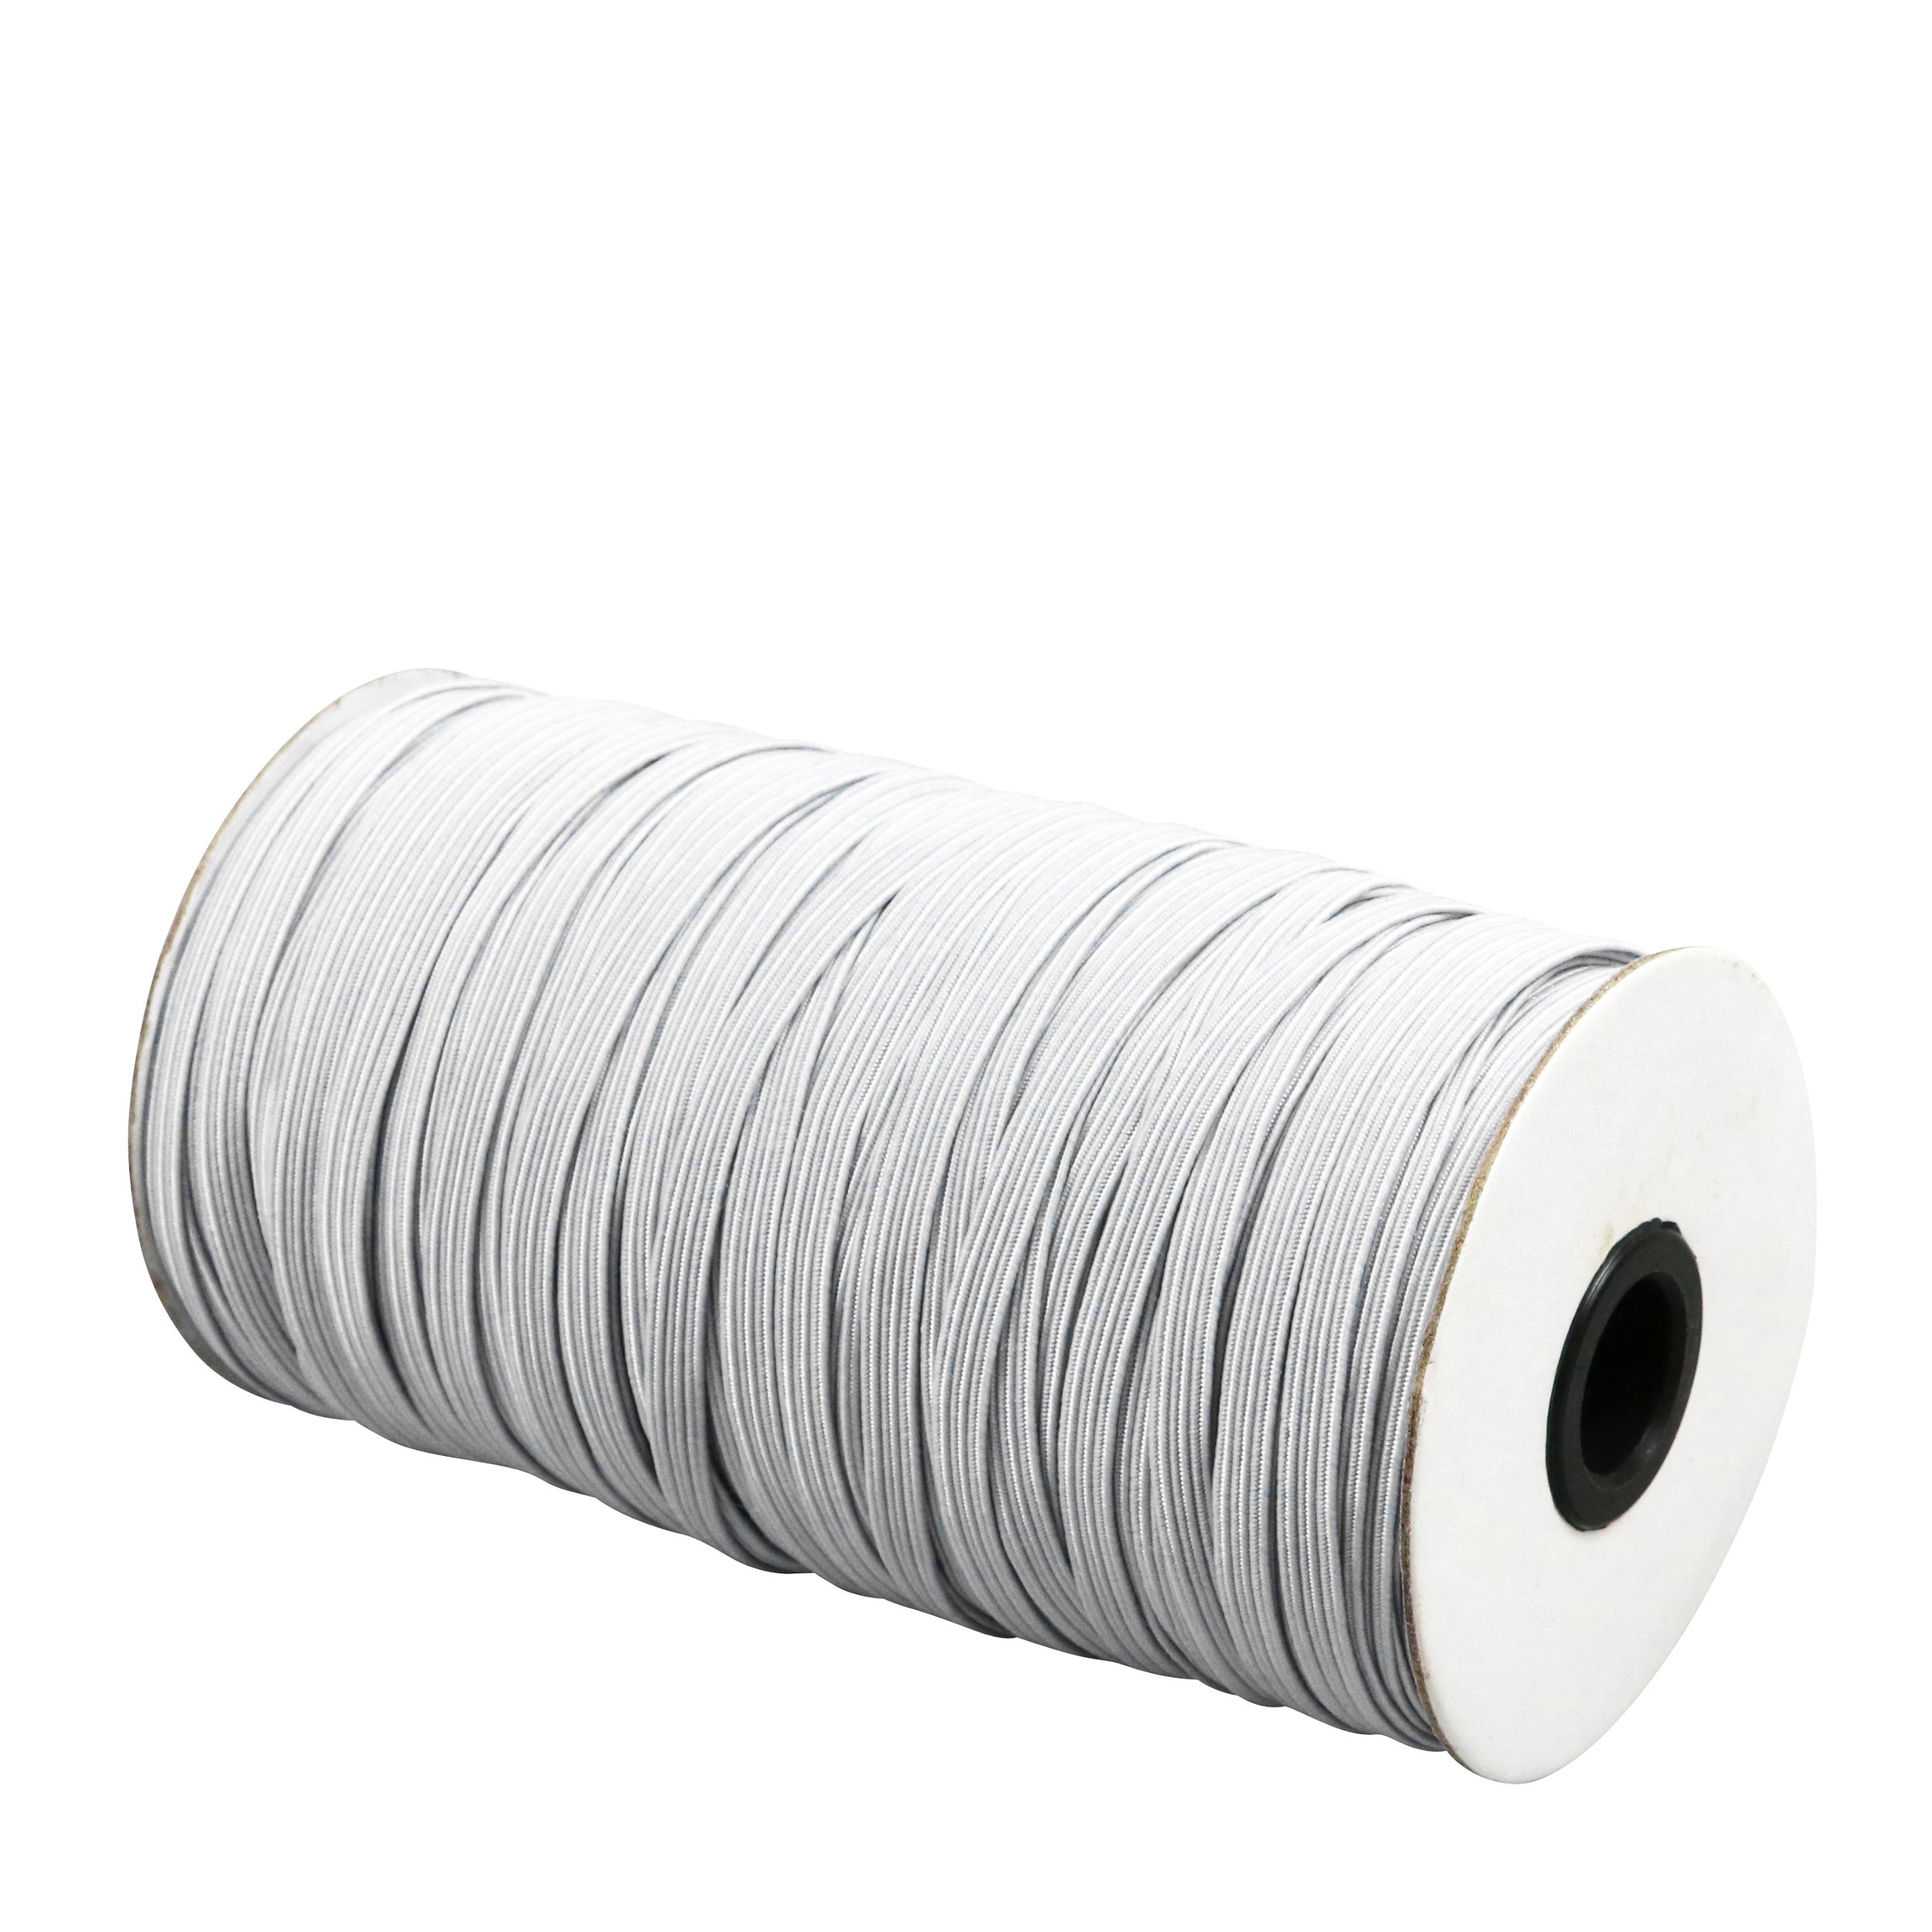 Acheter 20 m fil nylon tressé 0,3 mm - transparent En ligne